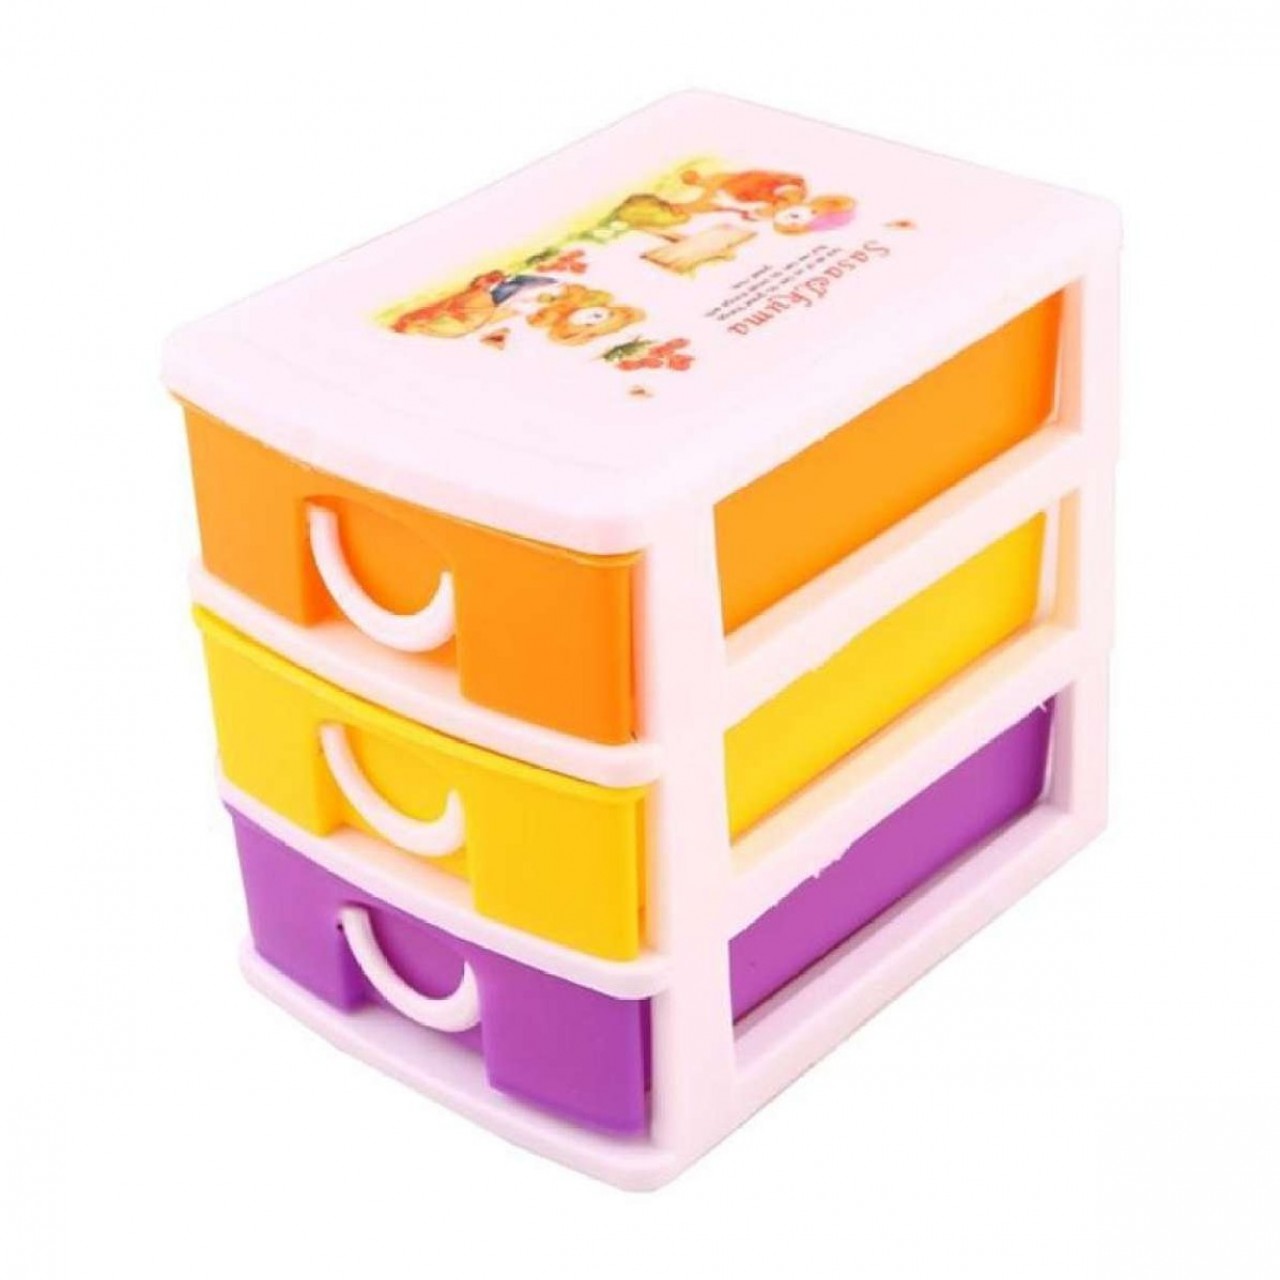 Storage Box Set - Plastic - Multi color - 3 Pieces Set